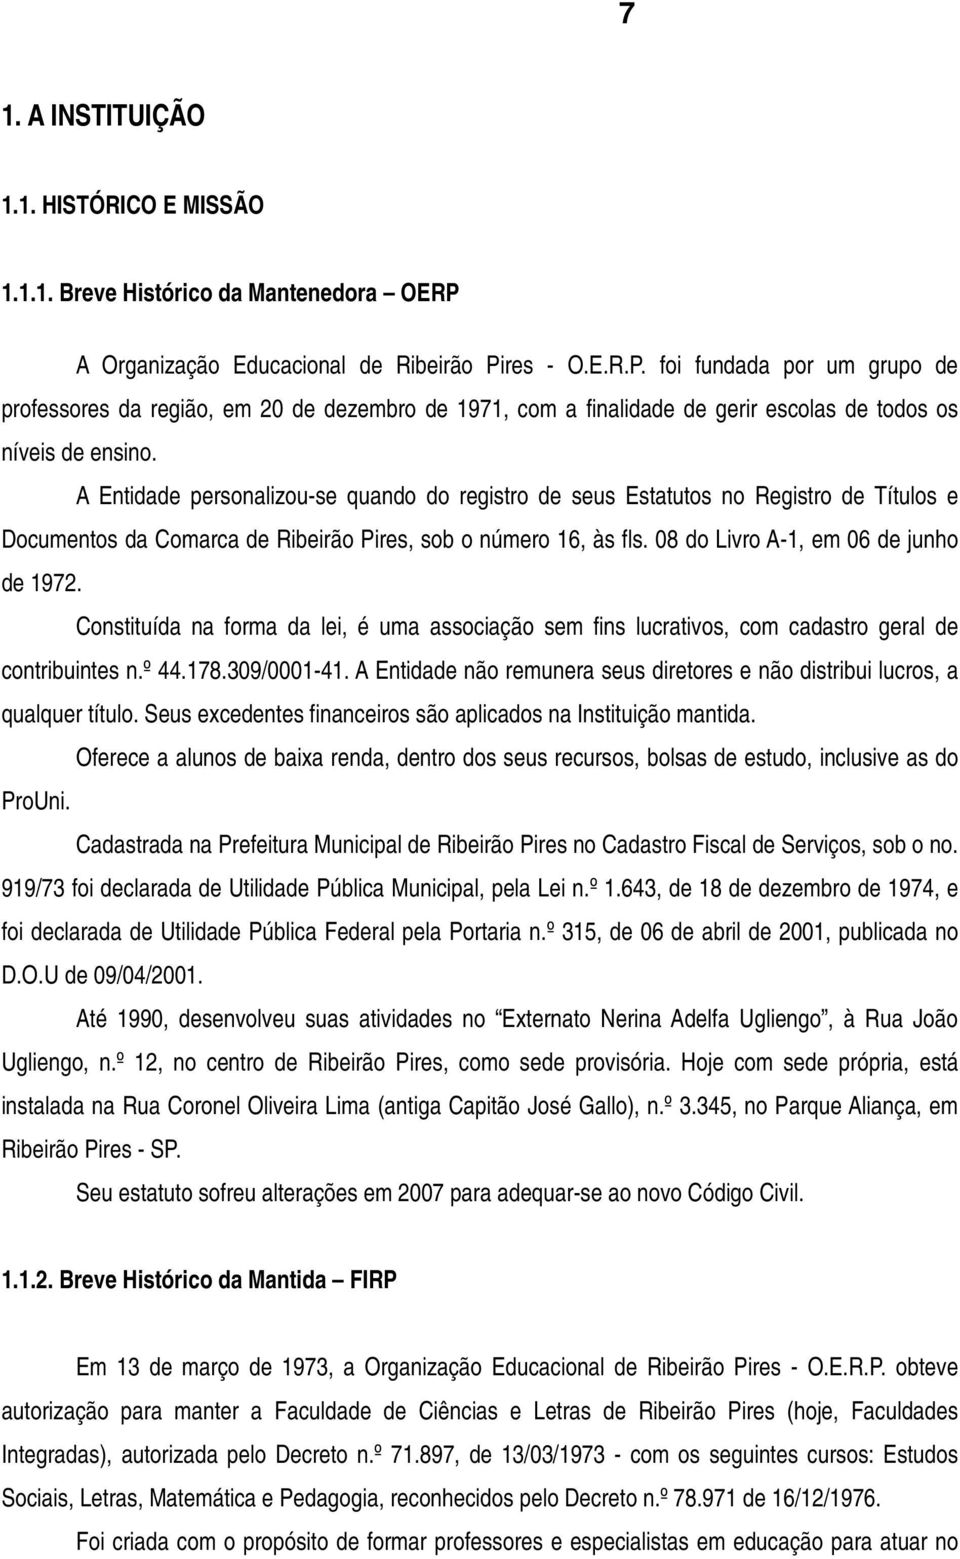 A Entidade personalizou-se quando do registro de seus Estatutos no Registro de Títulos e Documentos da Comarca de Ribeirão Pires, sob o número 16, às fls. 08 do Livro A-1, em 06 de junho de 1972.